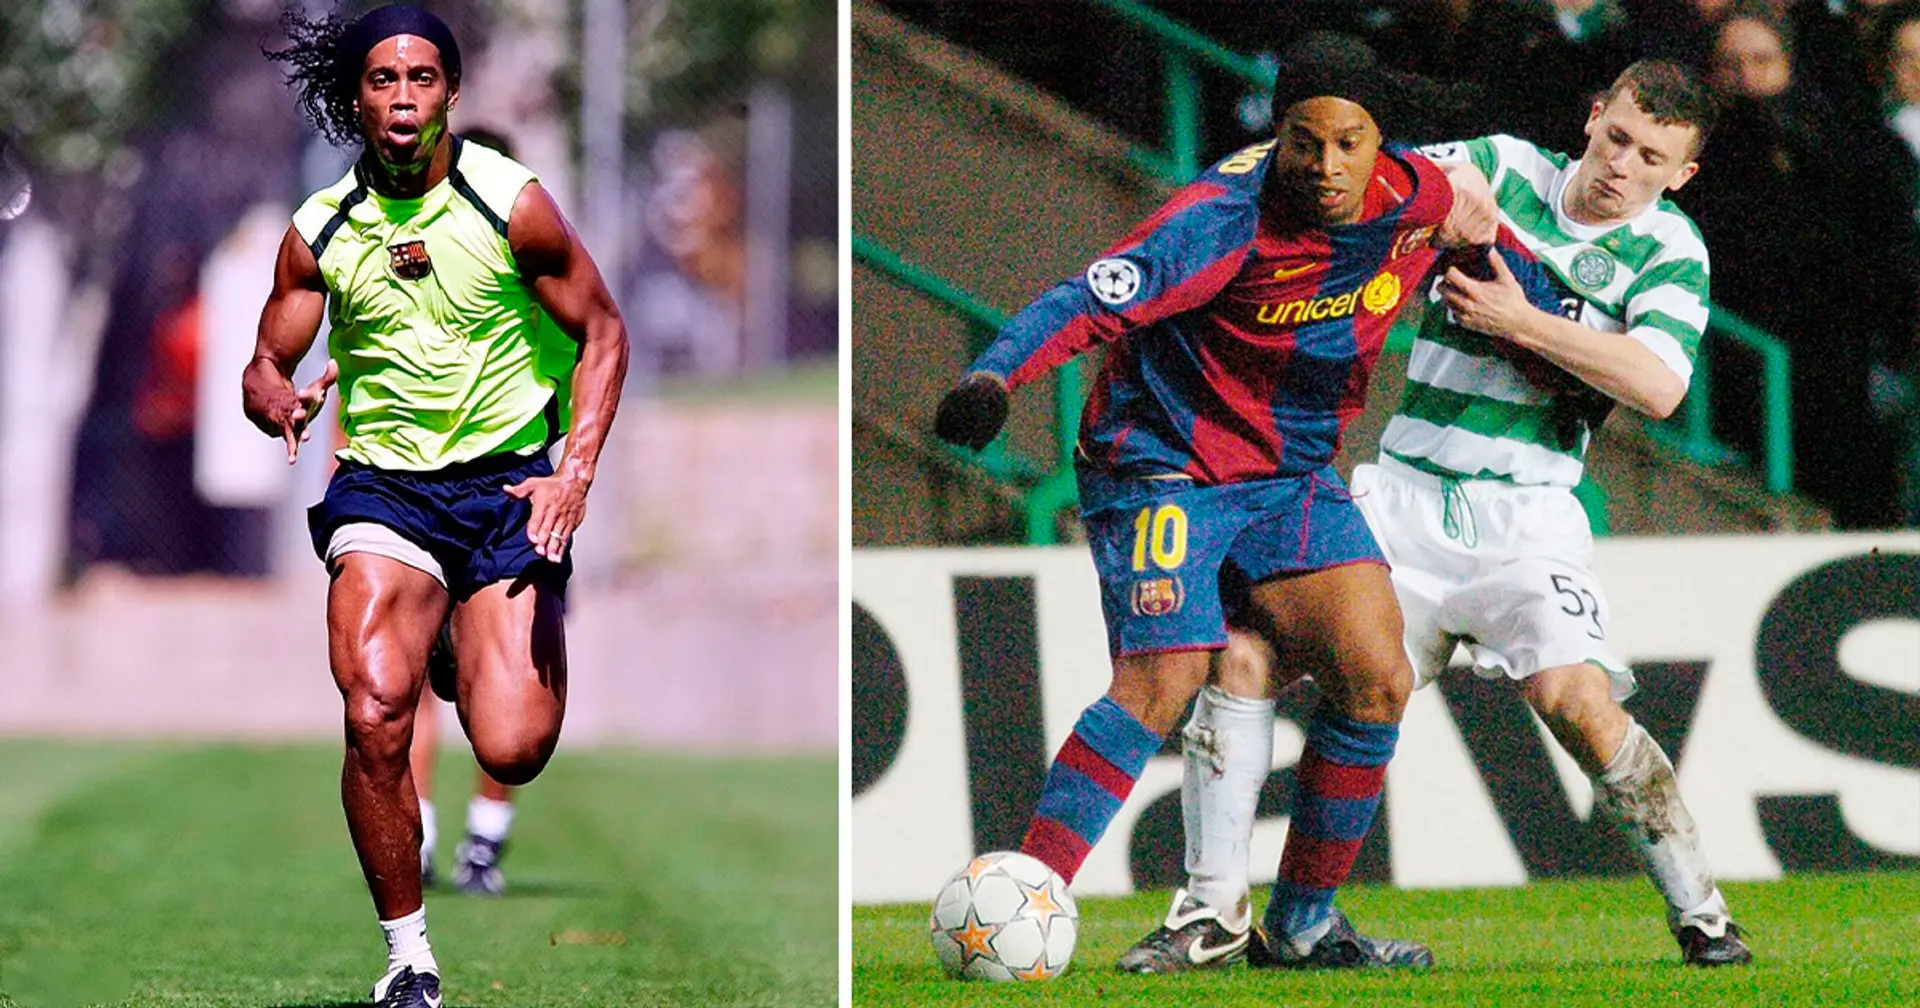 "Ronaldinho avait les fesses les plus fortes que j'ai jamais ressentis": un ancien défenseur du Celtic se souvient d'avoir affronté Ronaldinho et Barcelone